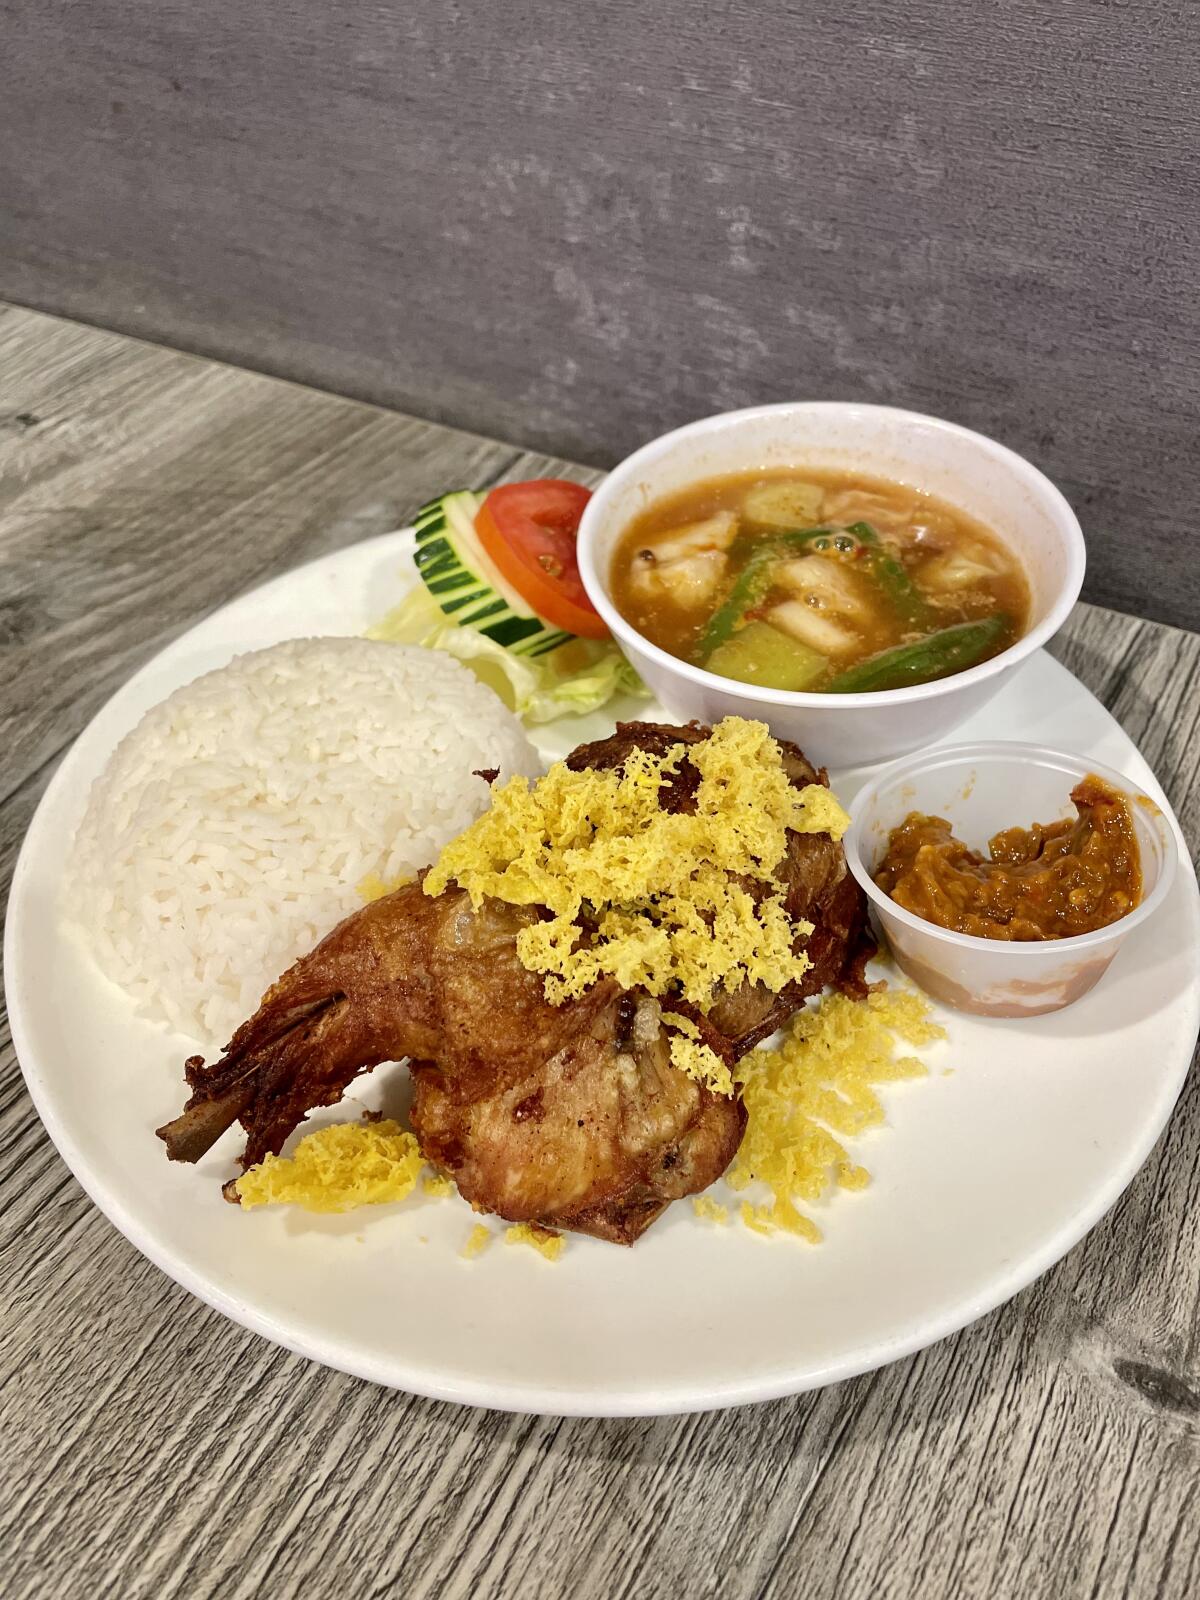 Nasi ayam kremes at Rice & Noodle, an Indonesian restaurant in Tustin.